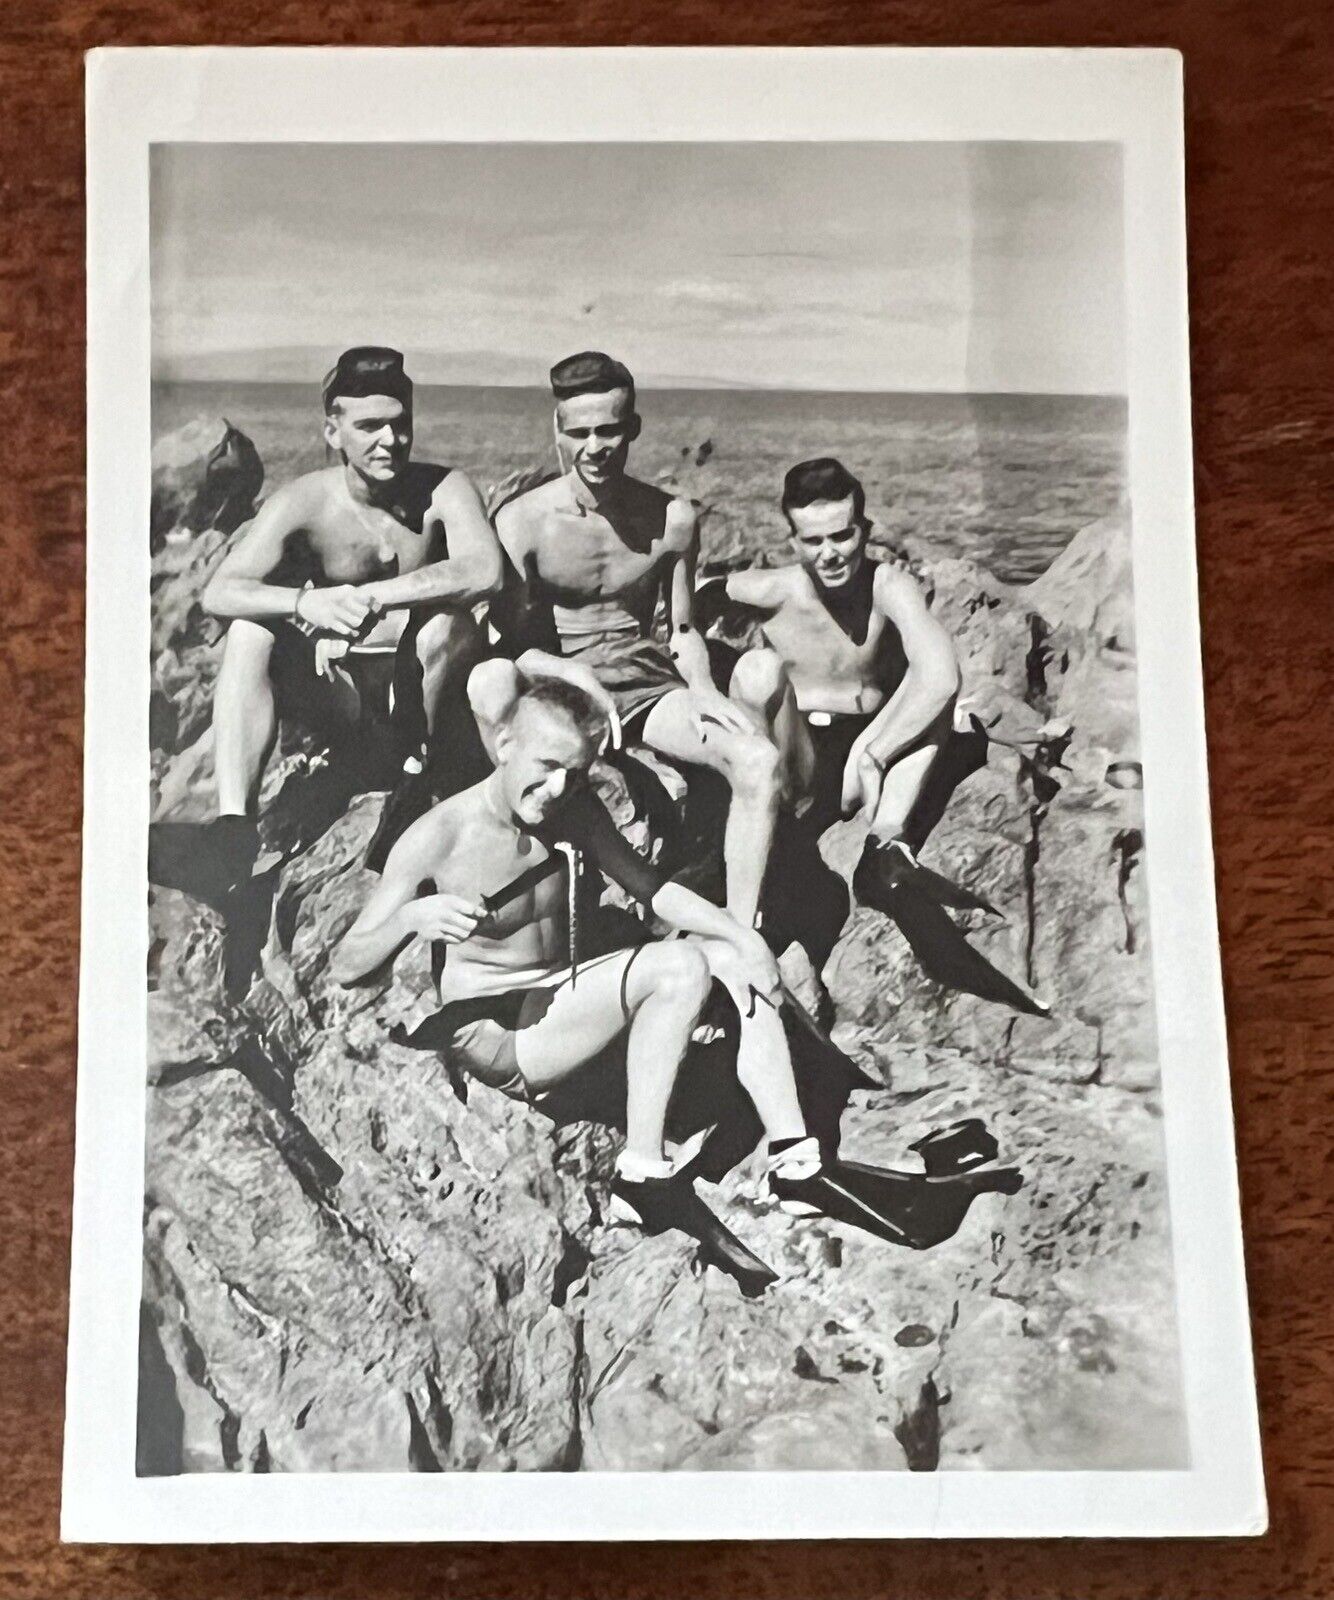 VTG c1940s Beefcake Snapshot Photo Four Shirtless Men Snorkeling Gear Swimsuits